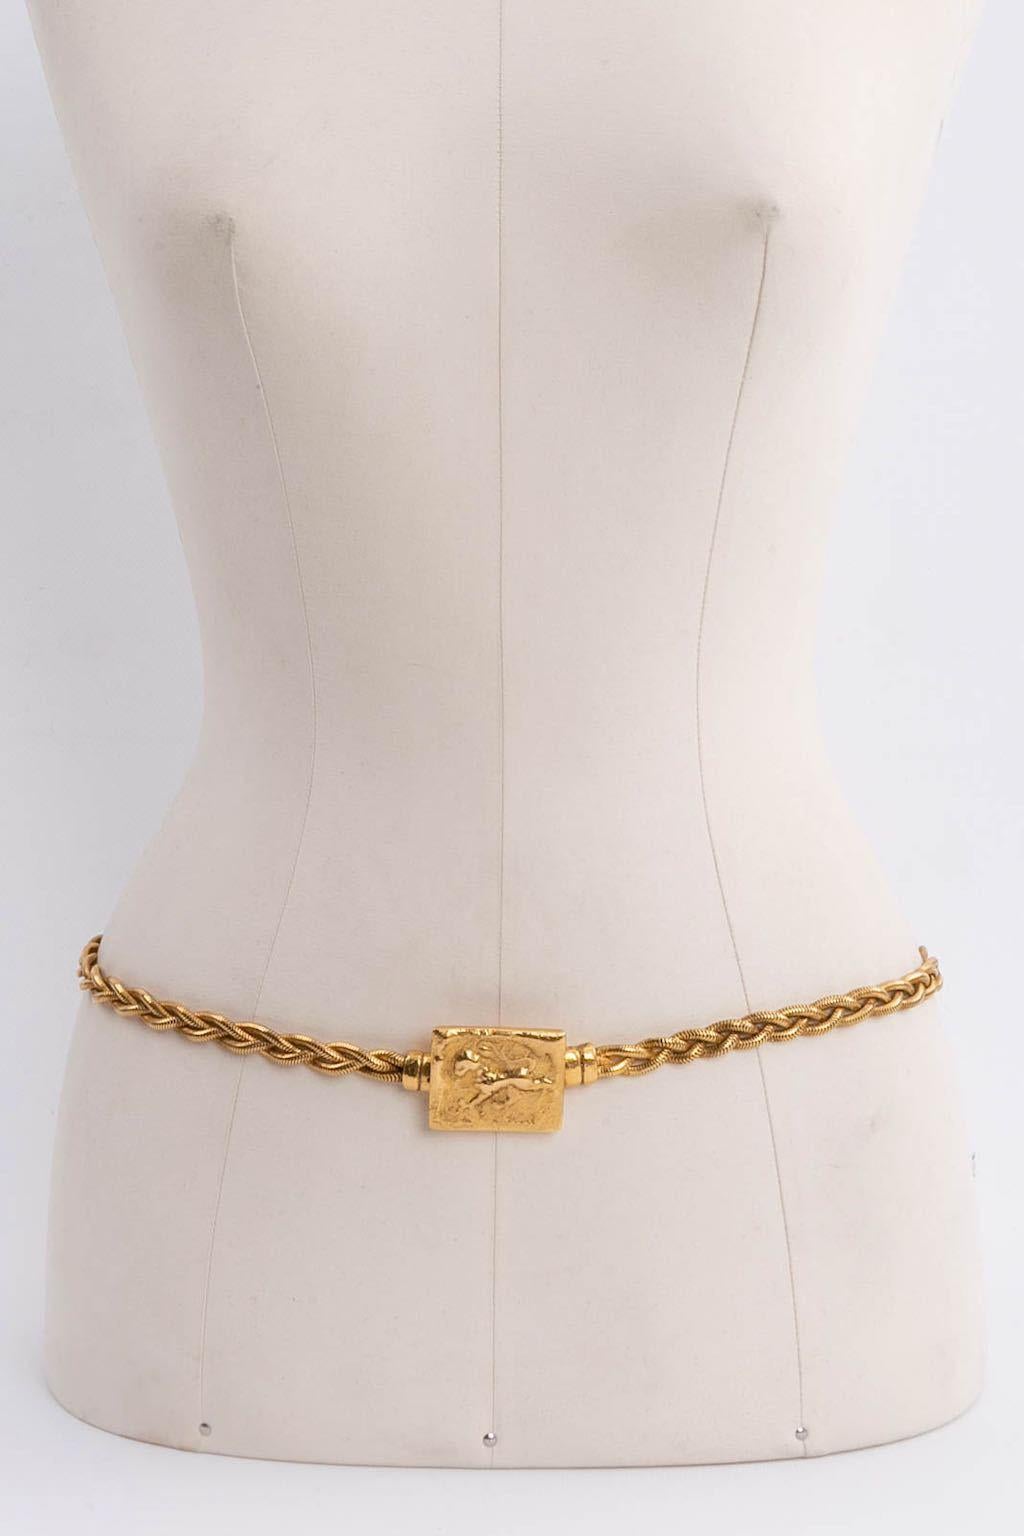 Chanel (Made in France) Vergoldeter Metallgürtel mit rechteckiger, gehämmerter Schnalle.

Zusätzliche Informationen: 
Abmessungen: Länge: 77 cm (30.31